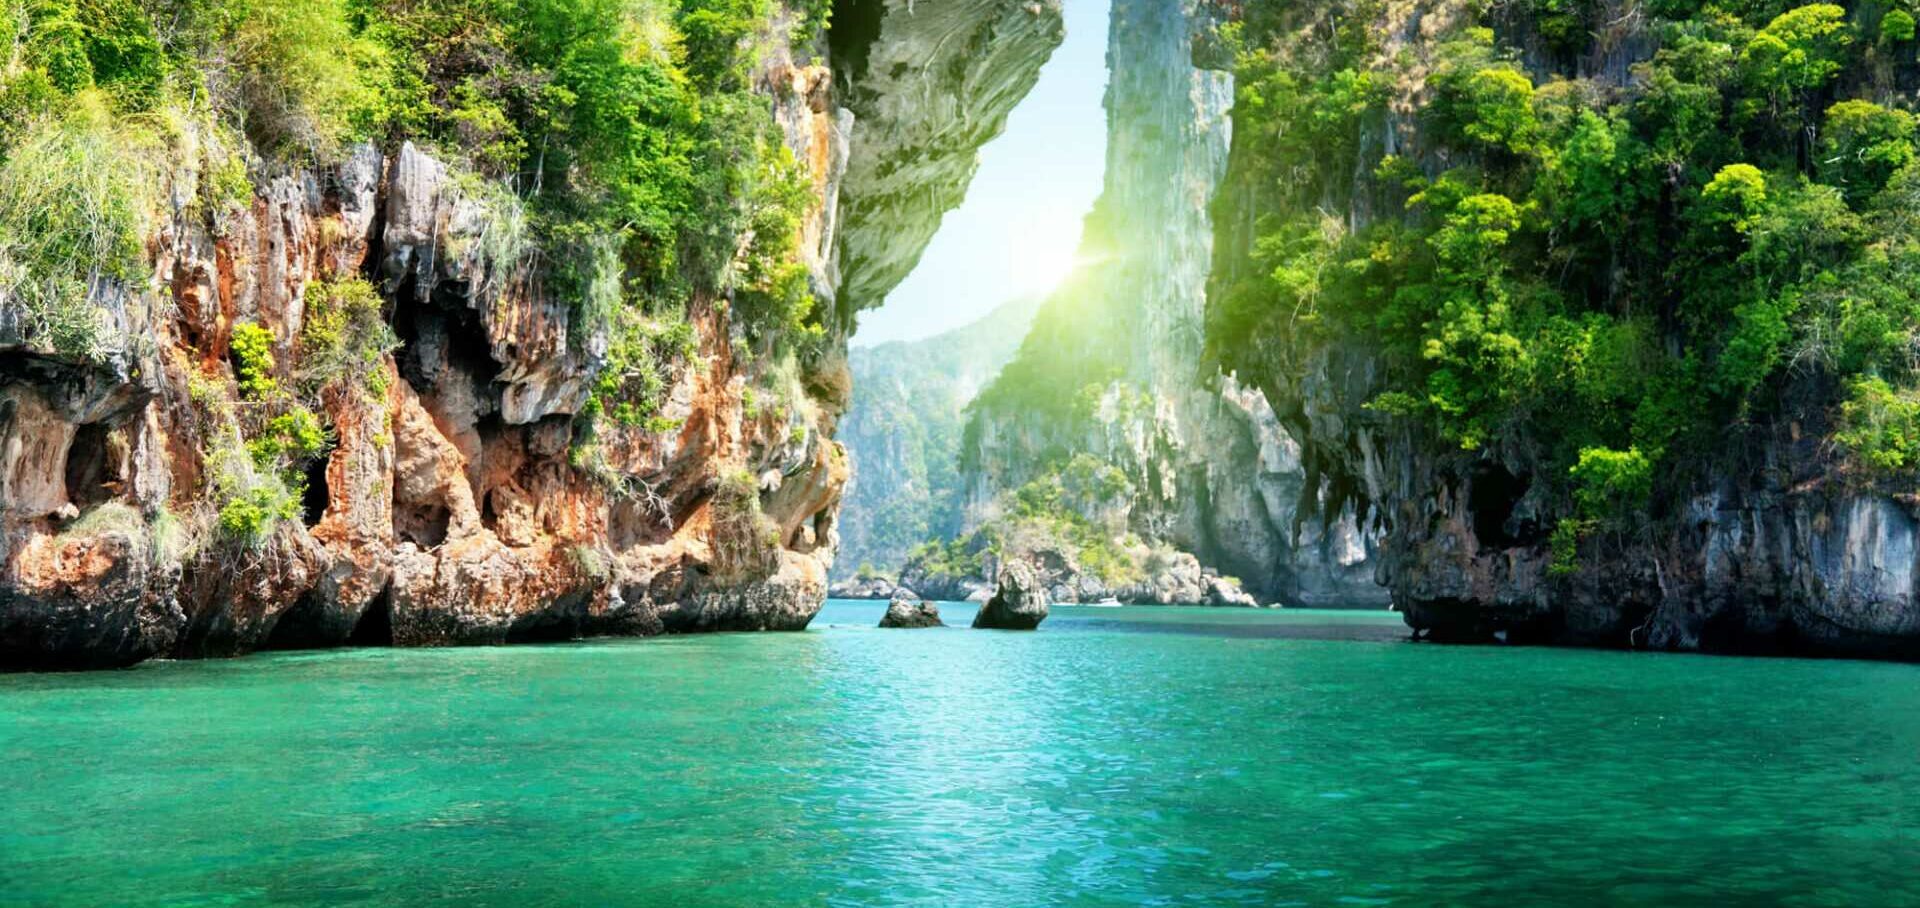 קראבי (Krabi) תאילנד - שייט יומי, טיולים, פעילויות וכל מה שאפשר לעשות!